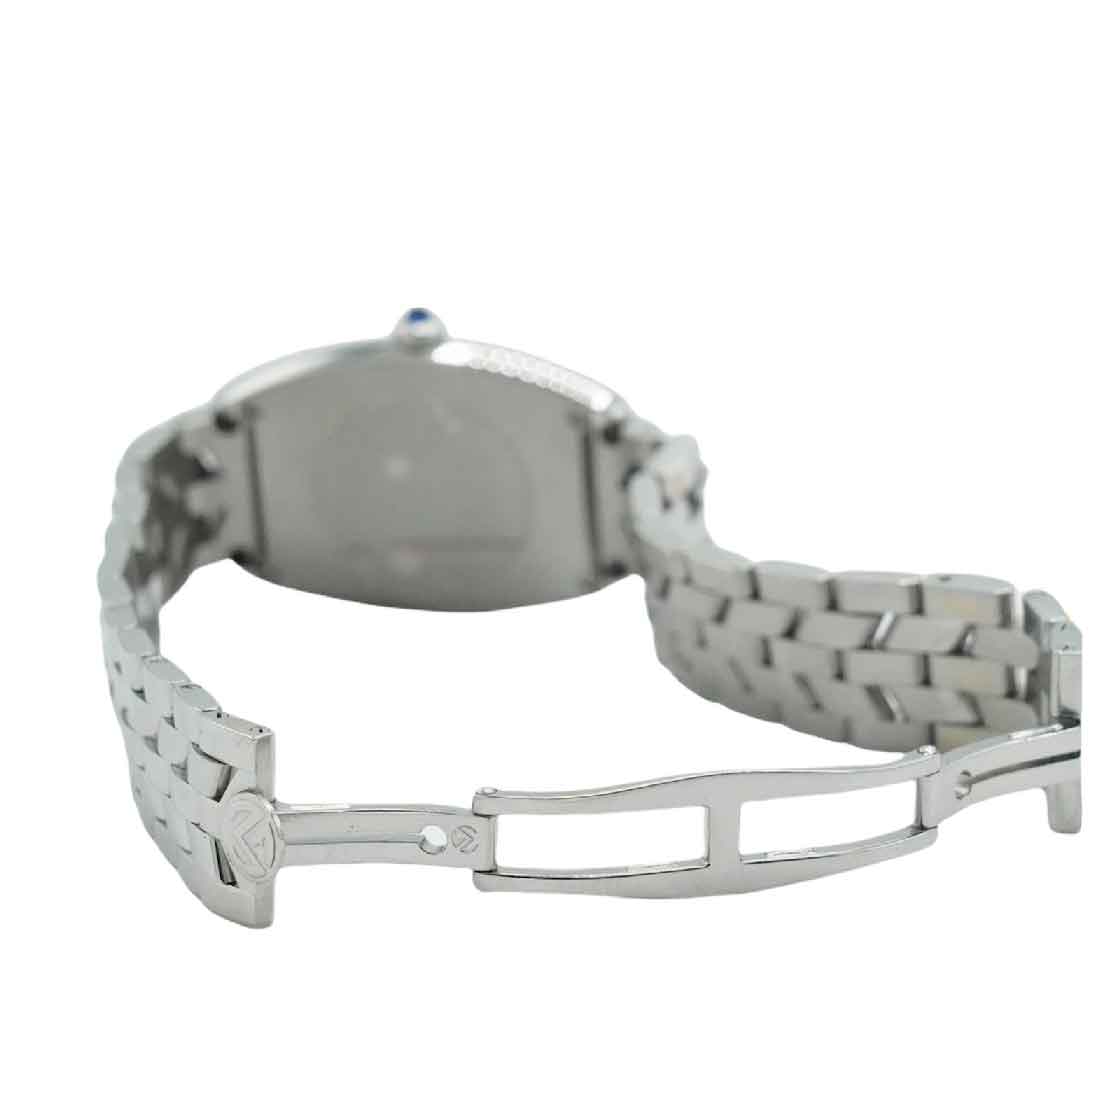 Frank Muller Cintrée Curvex Watch Factory Diamond Bezel Full set